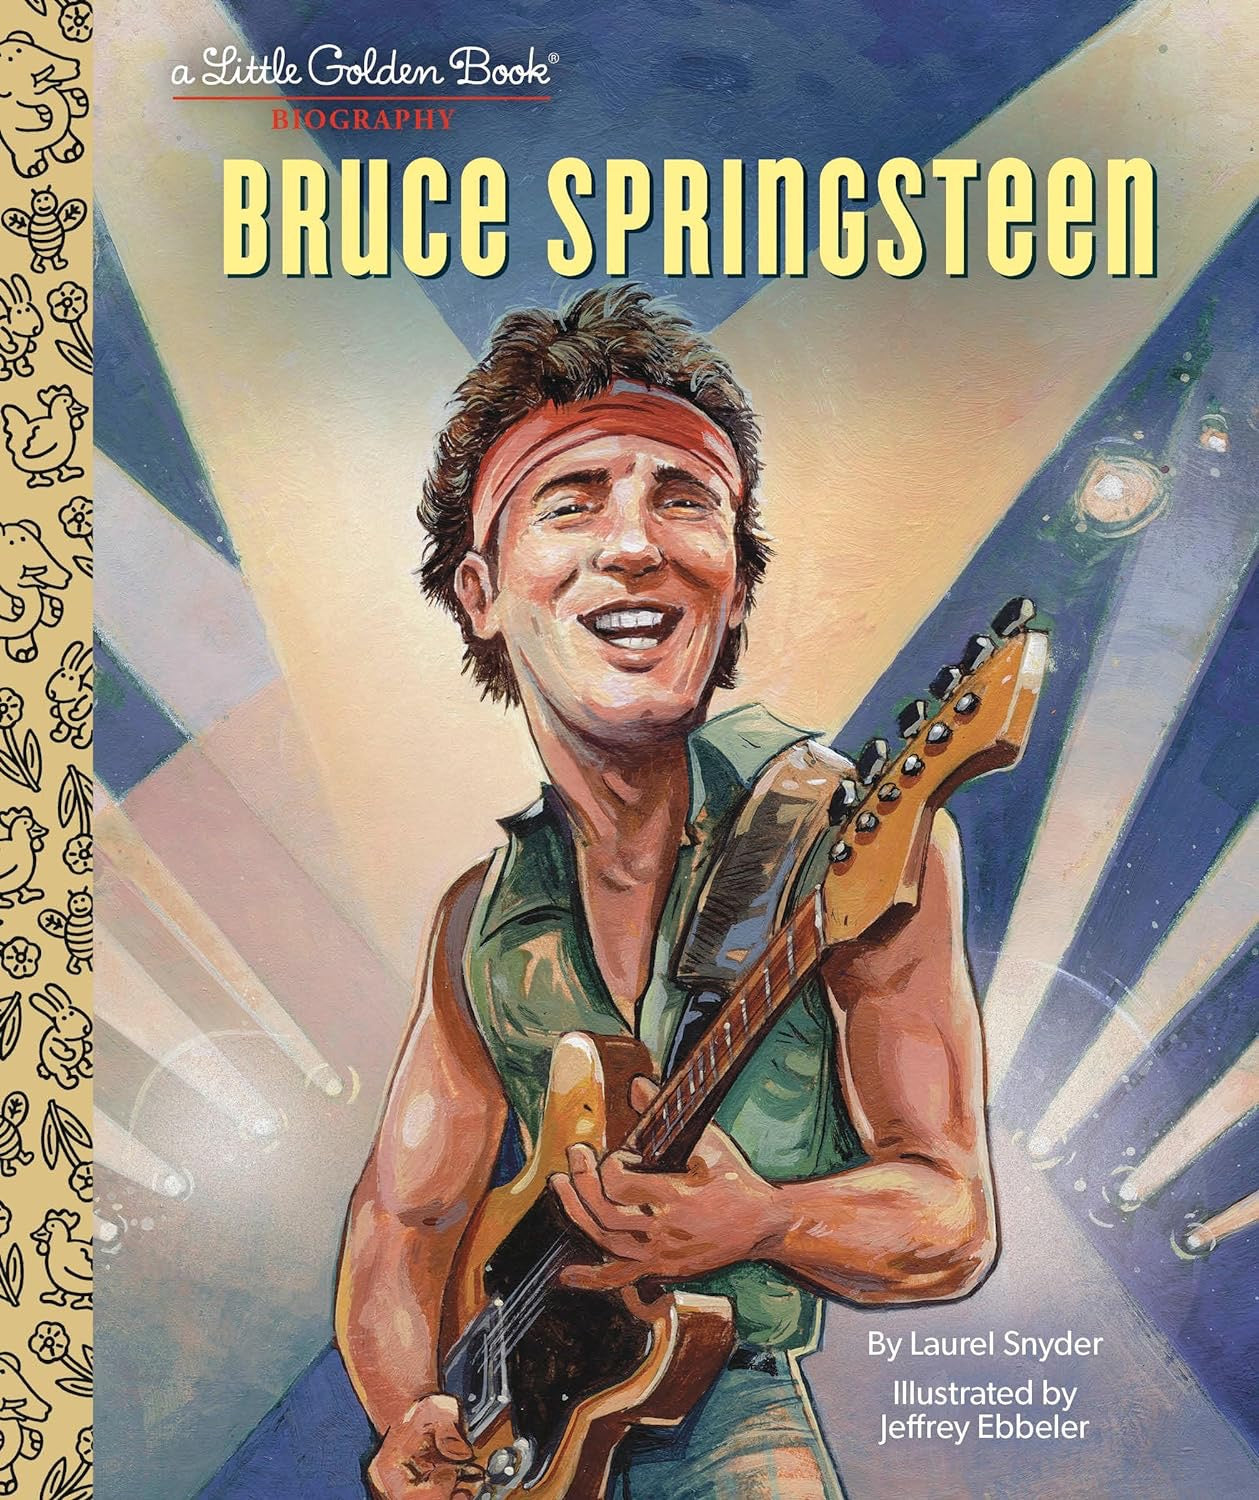 "Bruce Springsteen" Little Golden Book